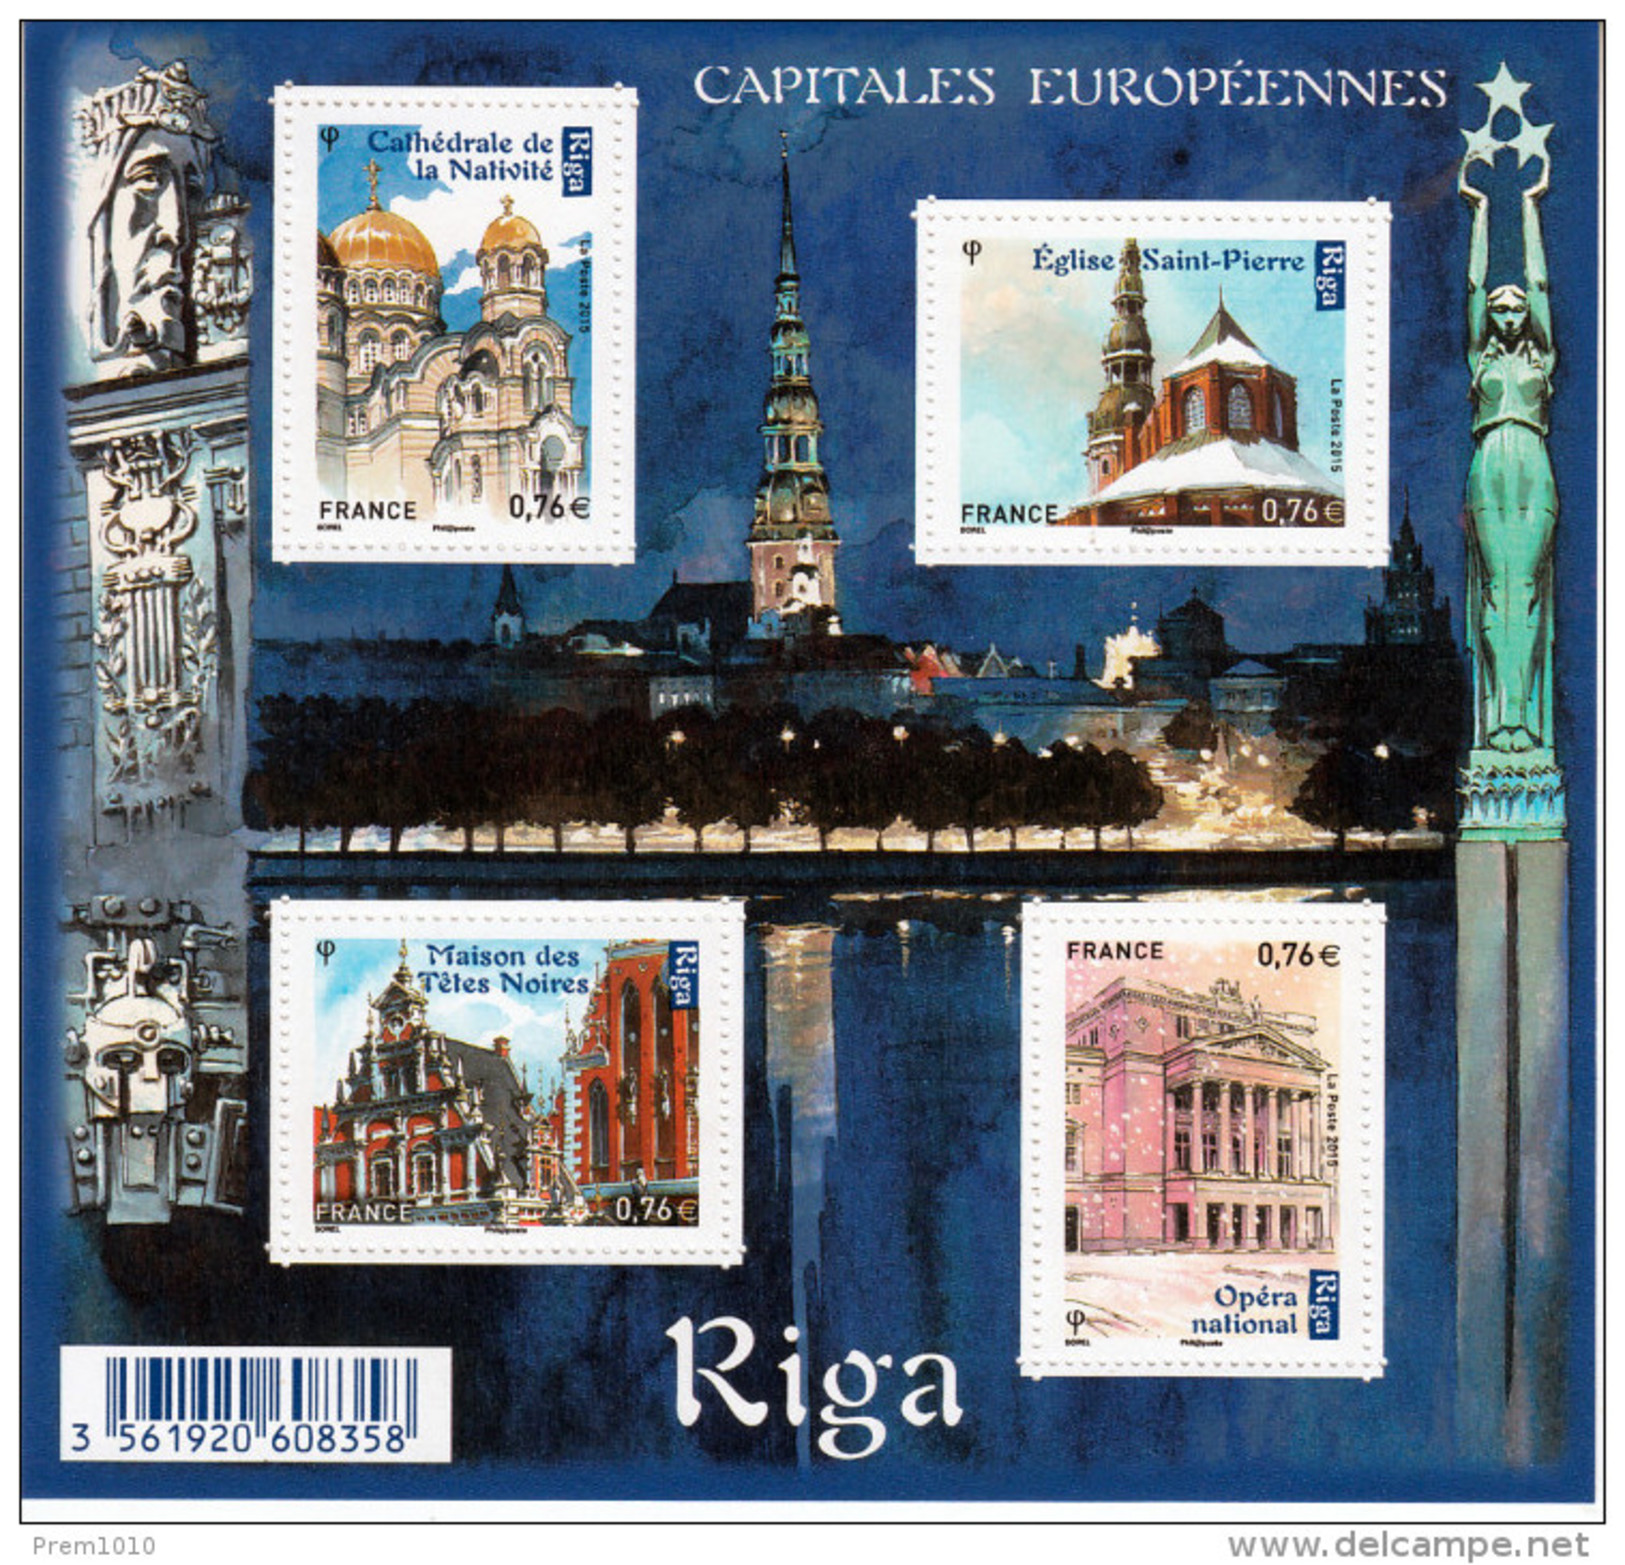 FRANCE- 2015-- EUROPEAN CAPITALS- RIGA- MNH BLOCK- CAPITLES EUROPEENNES SERIES- RIGA - Collectors